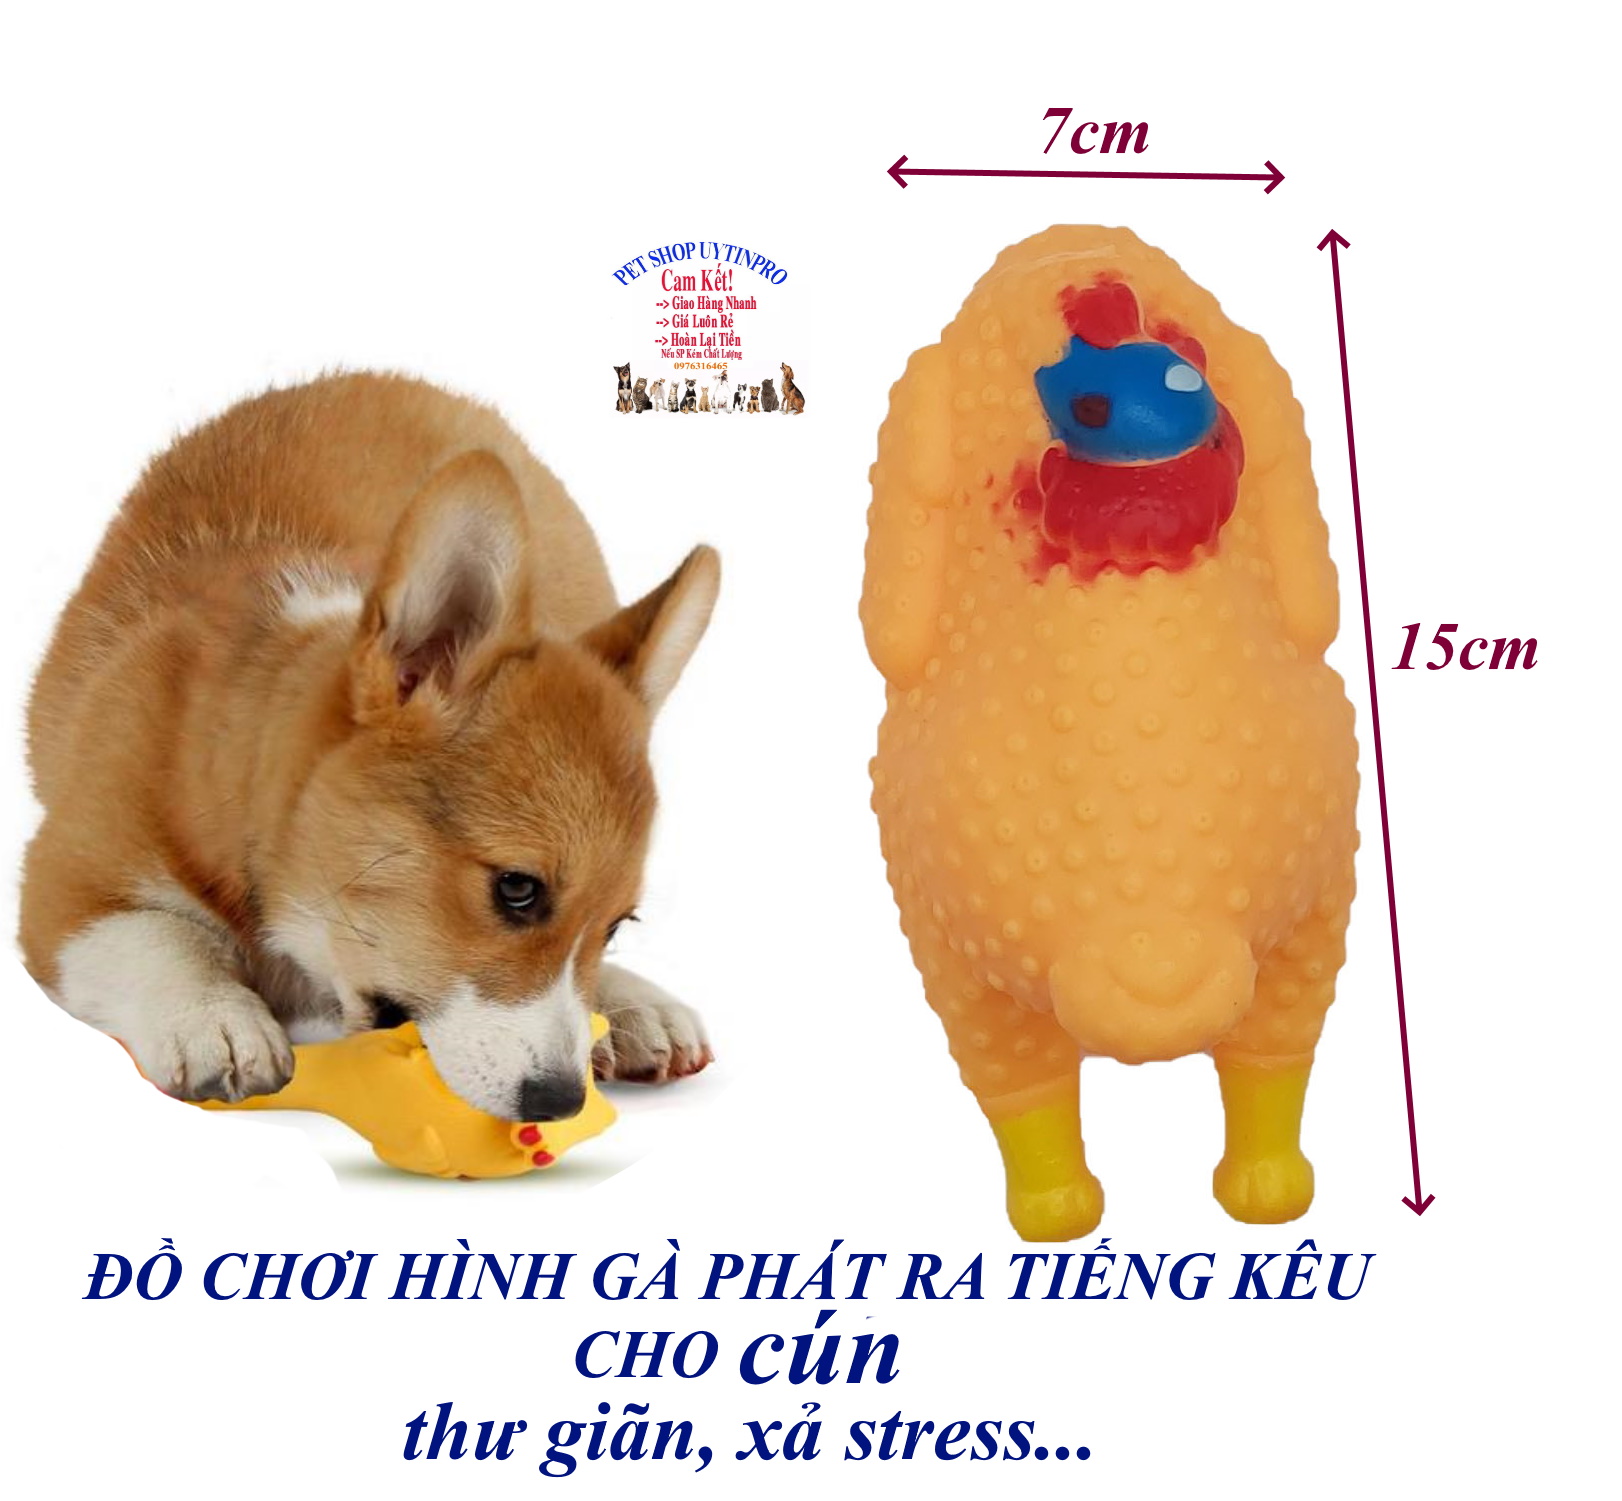 Đồ chơi cho Chó Hình con gà Đầu xanh đỏ Dài 15cm Phát ra tiếng kêu Chất liệu nhựa dẻo, An toàn, Giúp thú cưng thư giãn